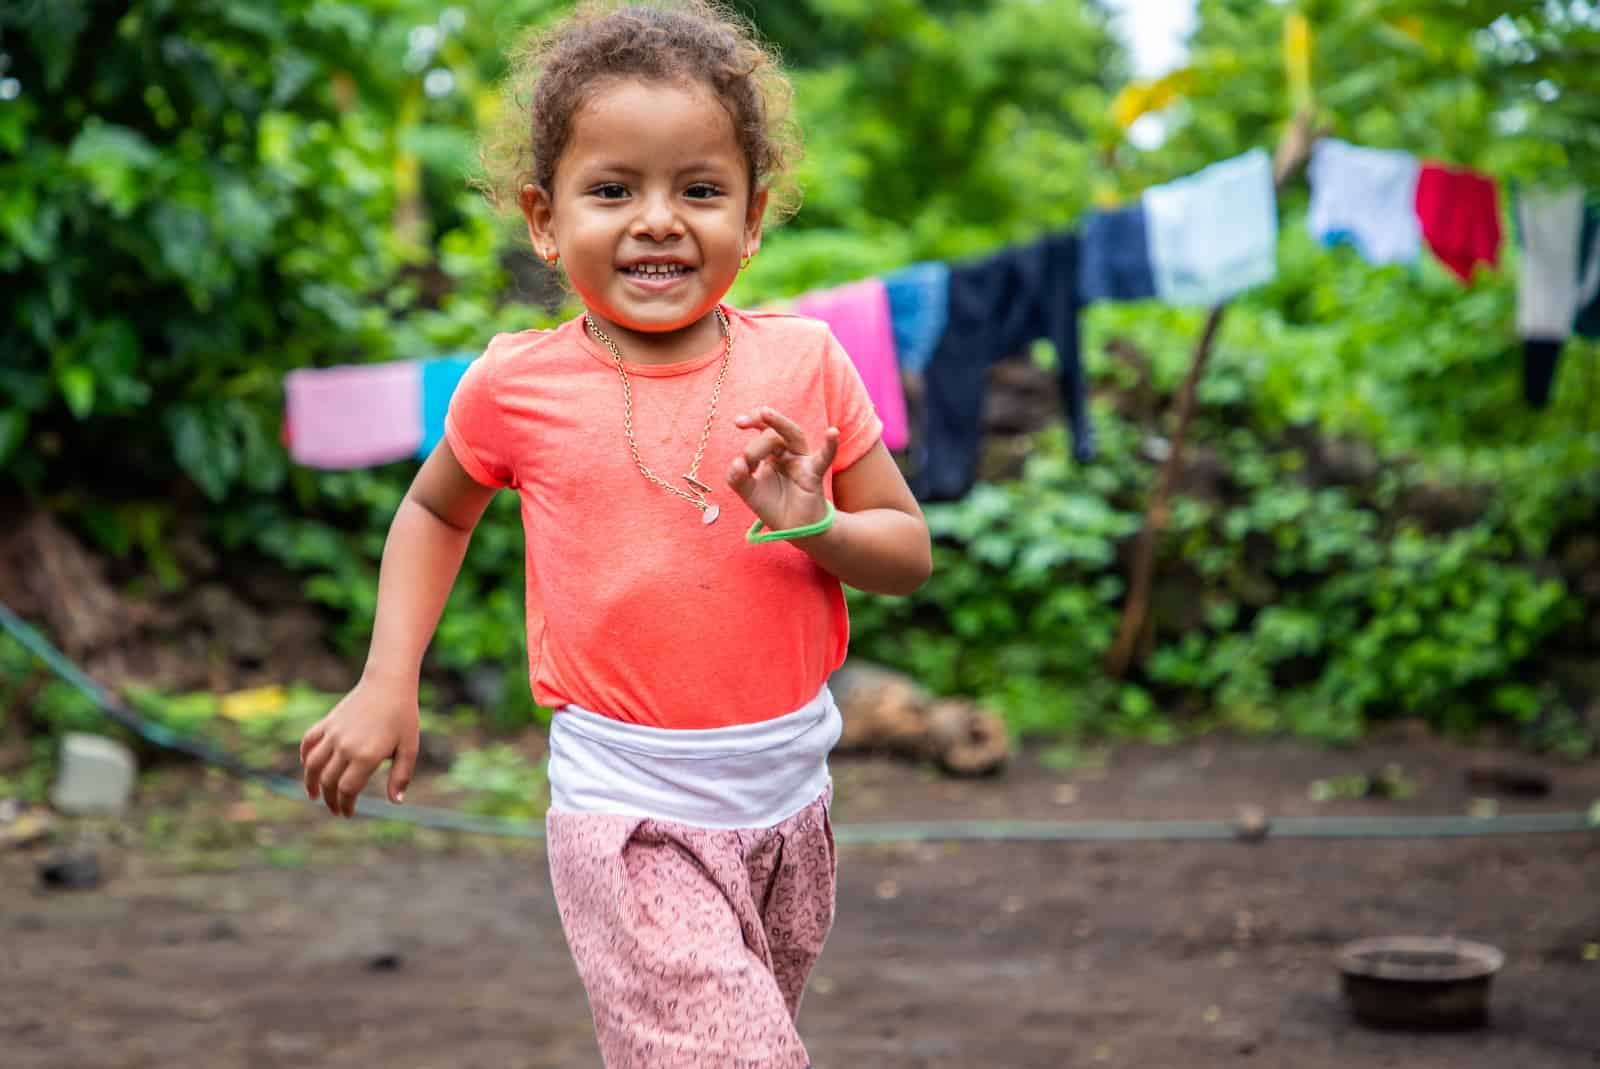 A little girl runs toward the camera, smiling.